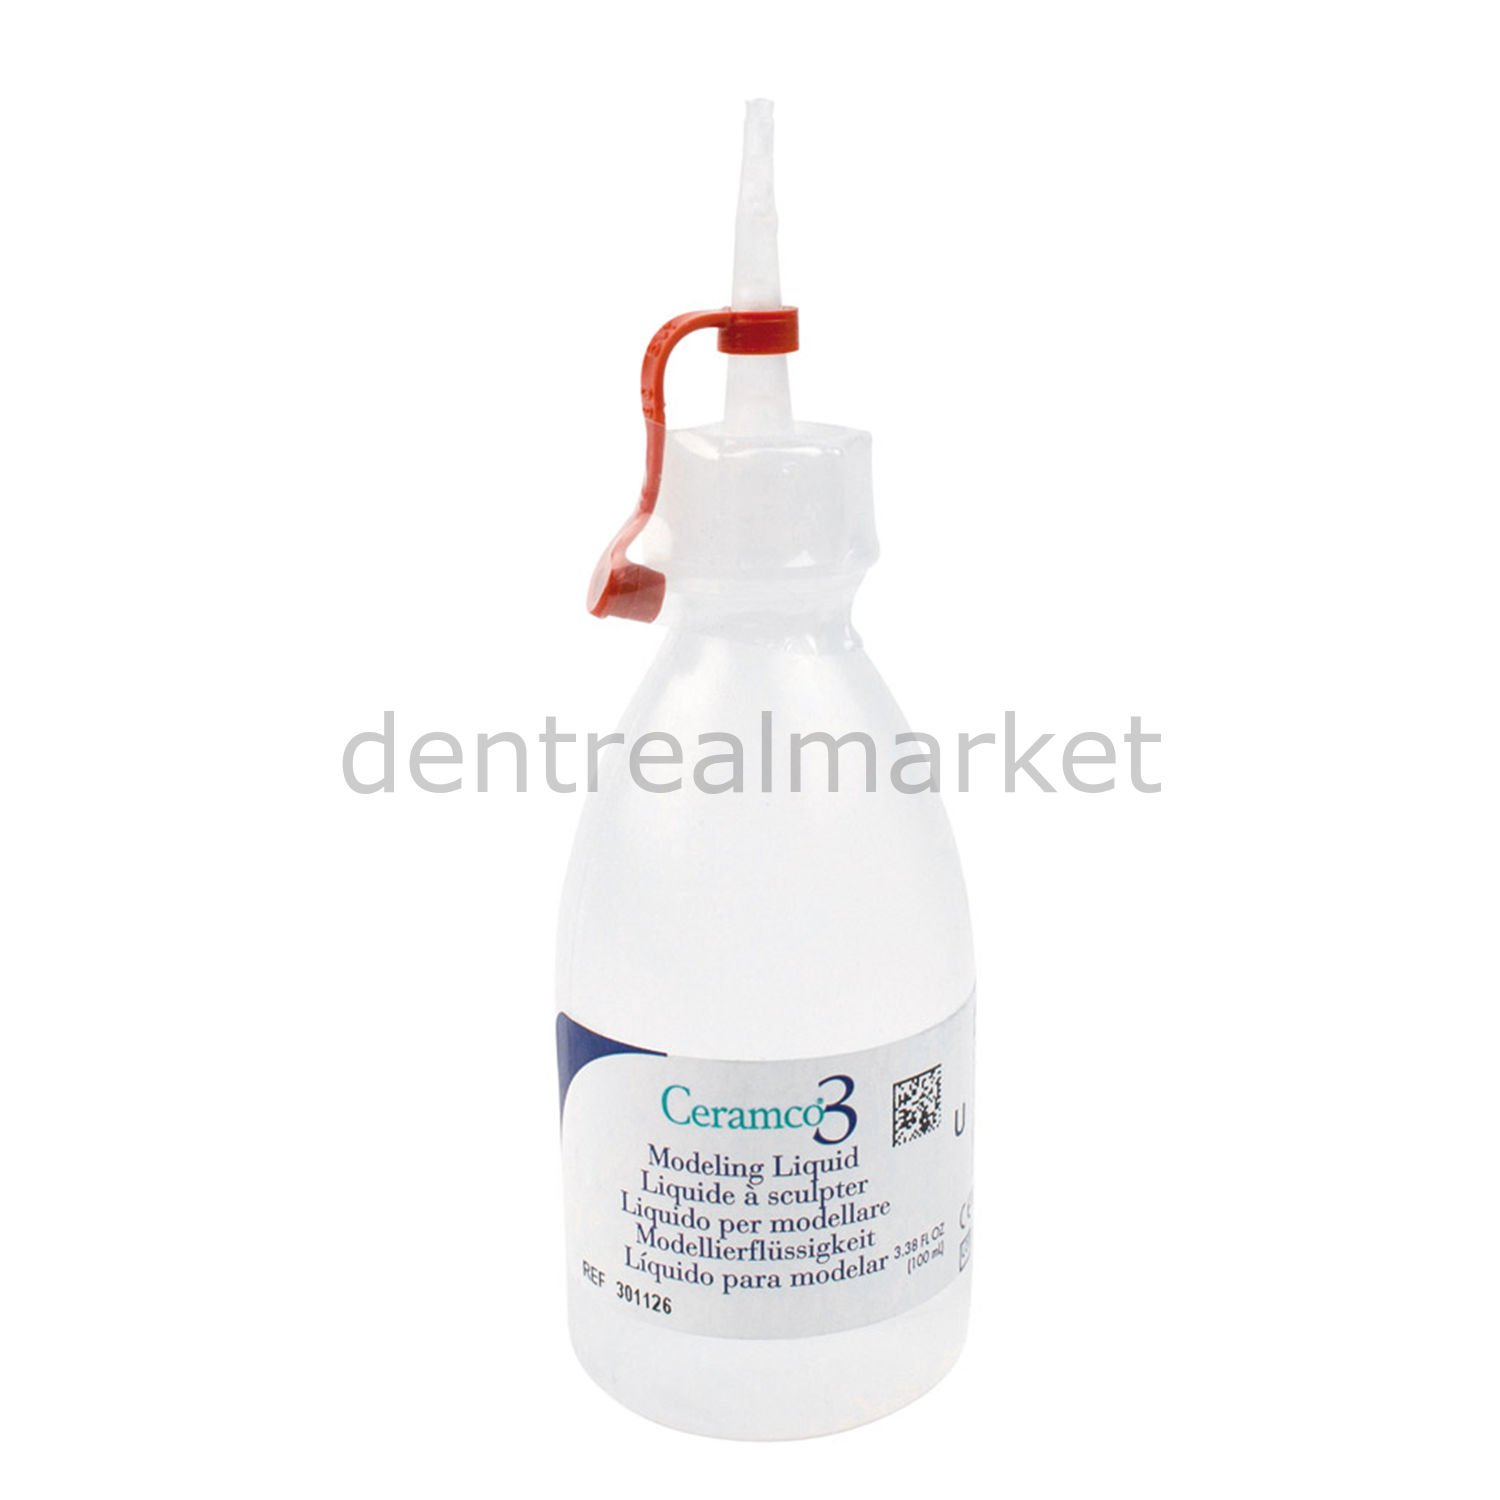 Ceramco 3 - Modelling Liquid E - Dentin Likiti 100 ml